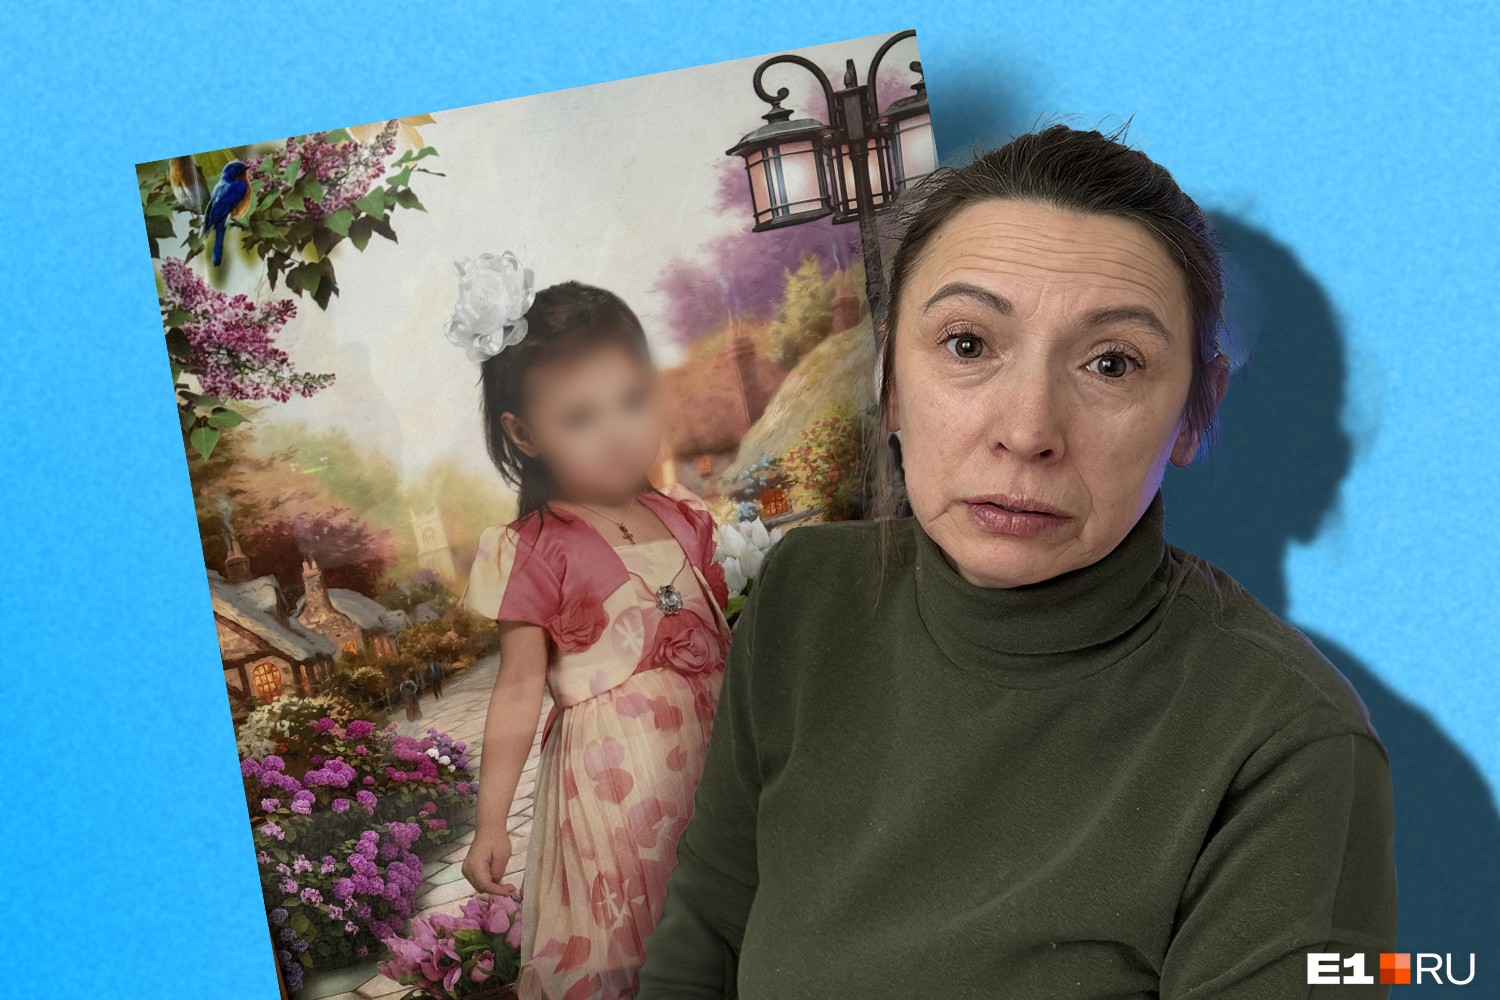 «Ребенок в шоке, в ужасе»: история бабушки из Екатеринбурга, которая пошла на преступление, воюя за внучку